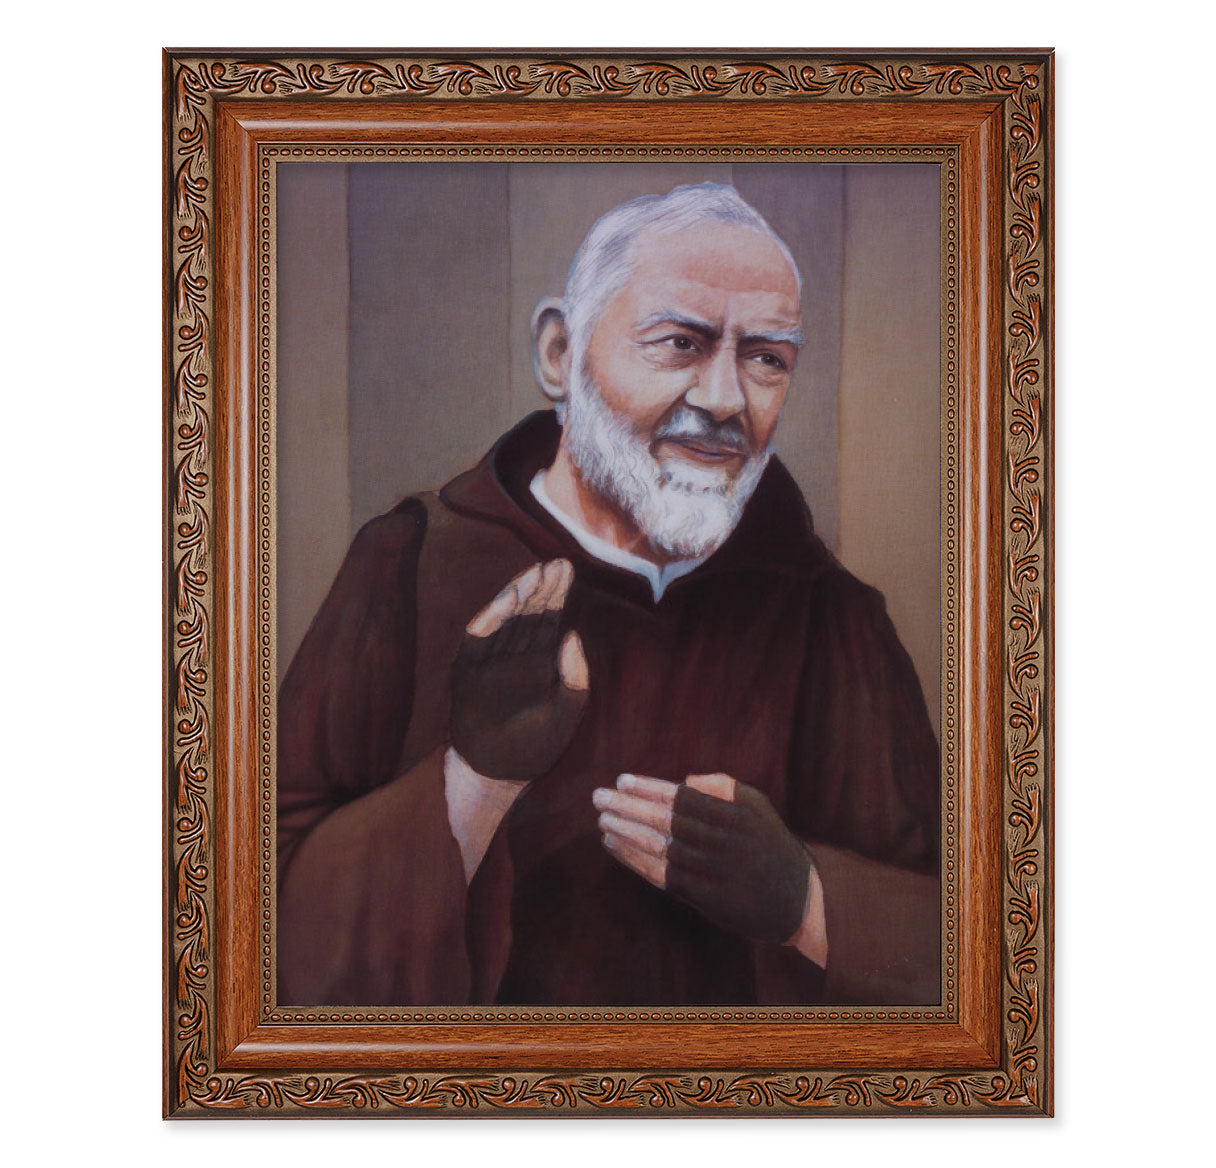 St. Pio Mahogany Finished Framed Art